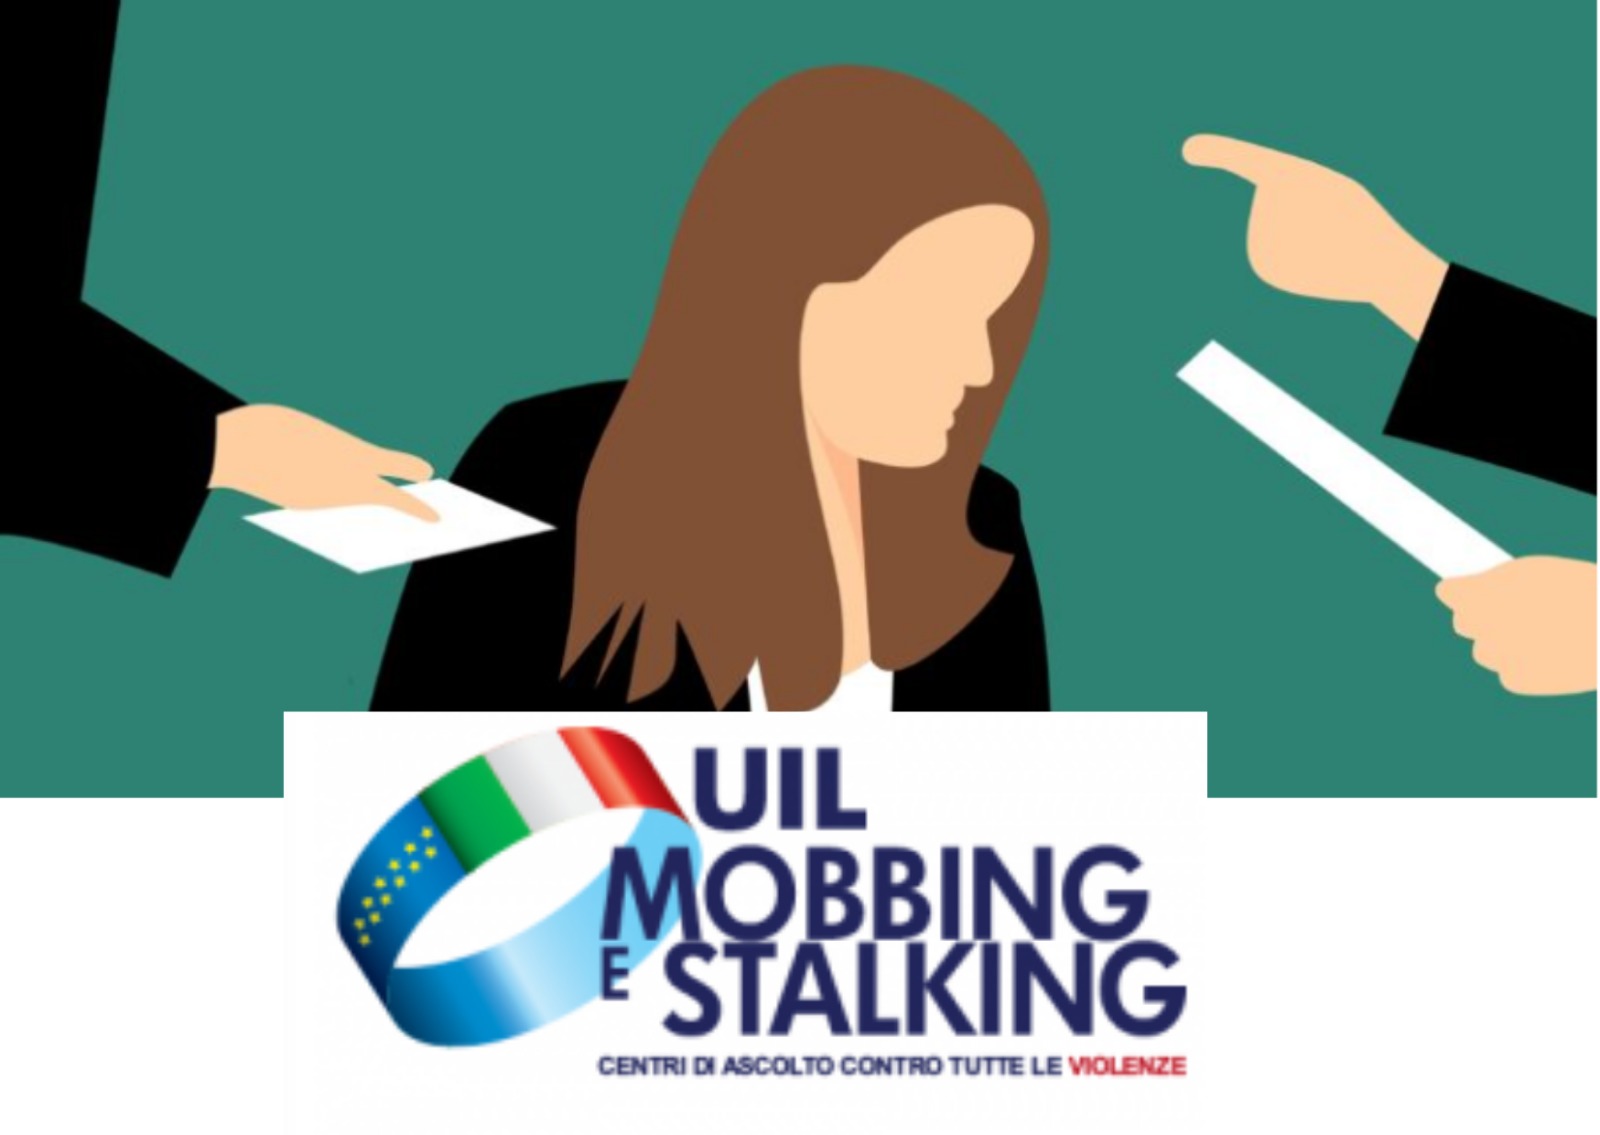 La Uil si organizza contro il mobbing e lo stalking